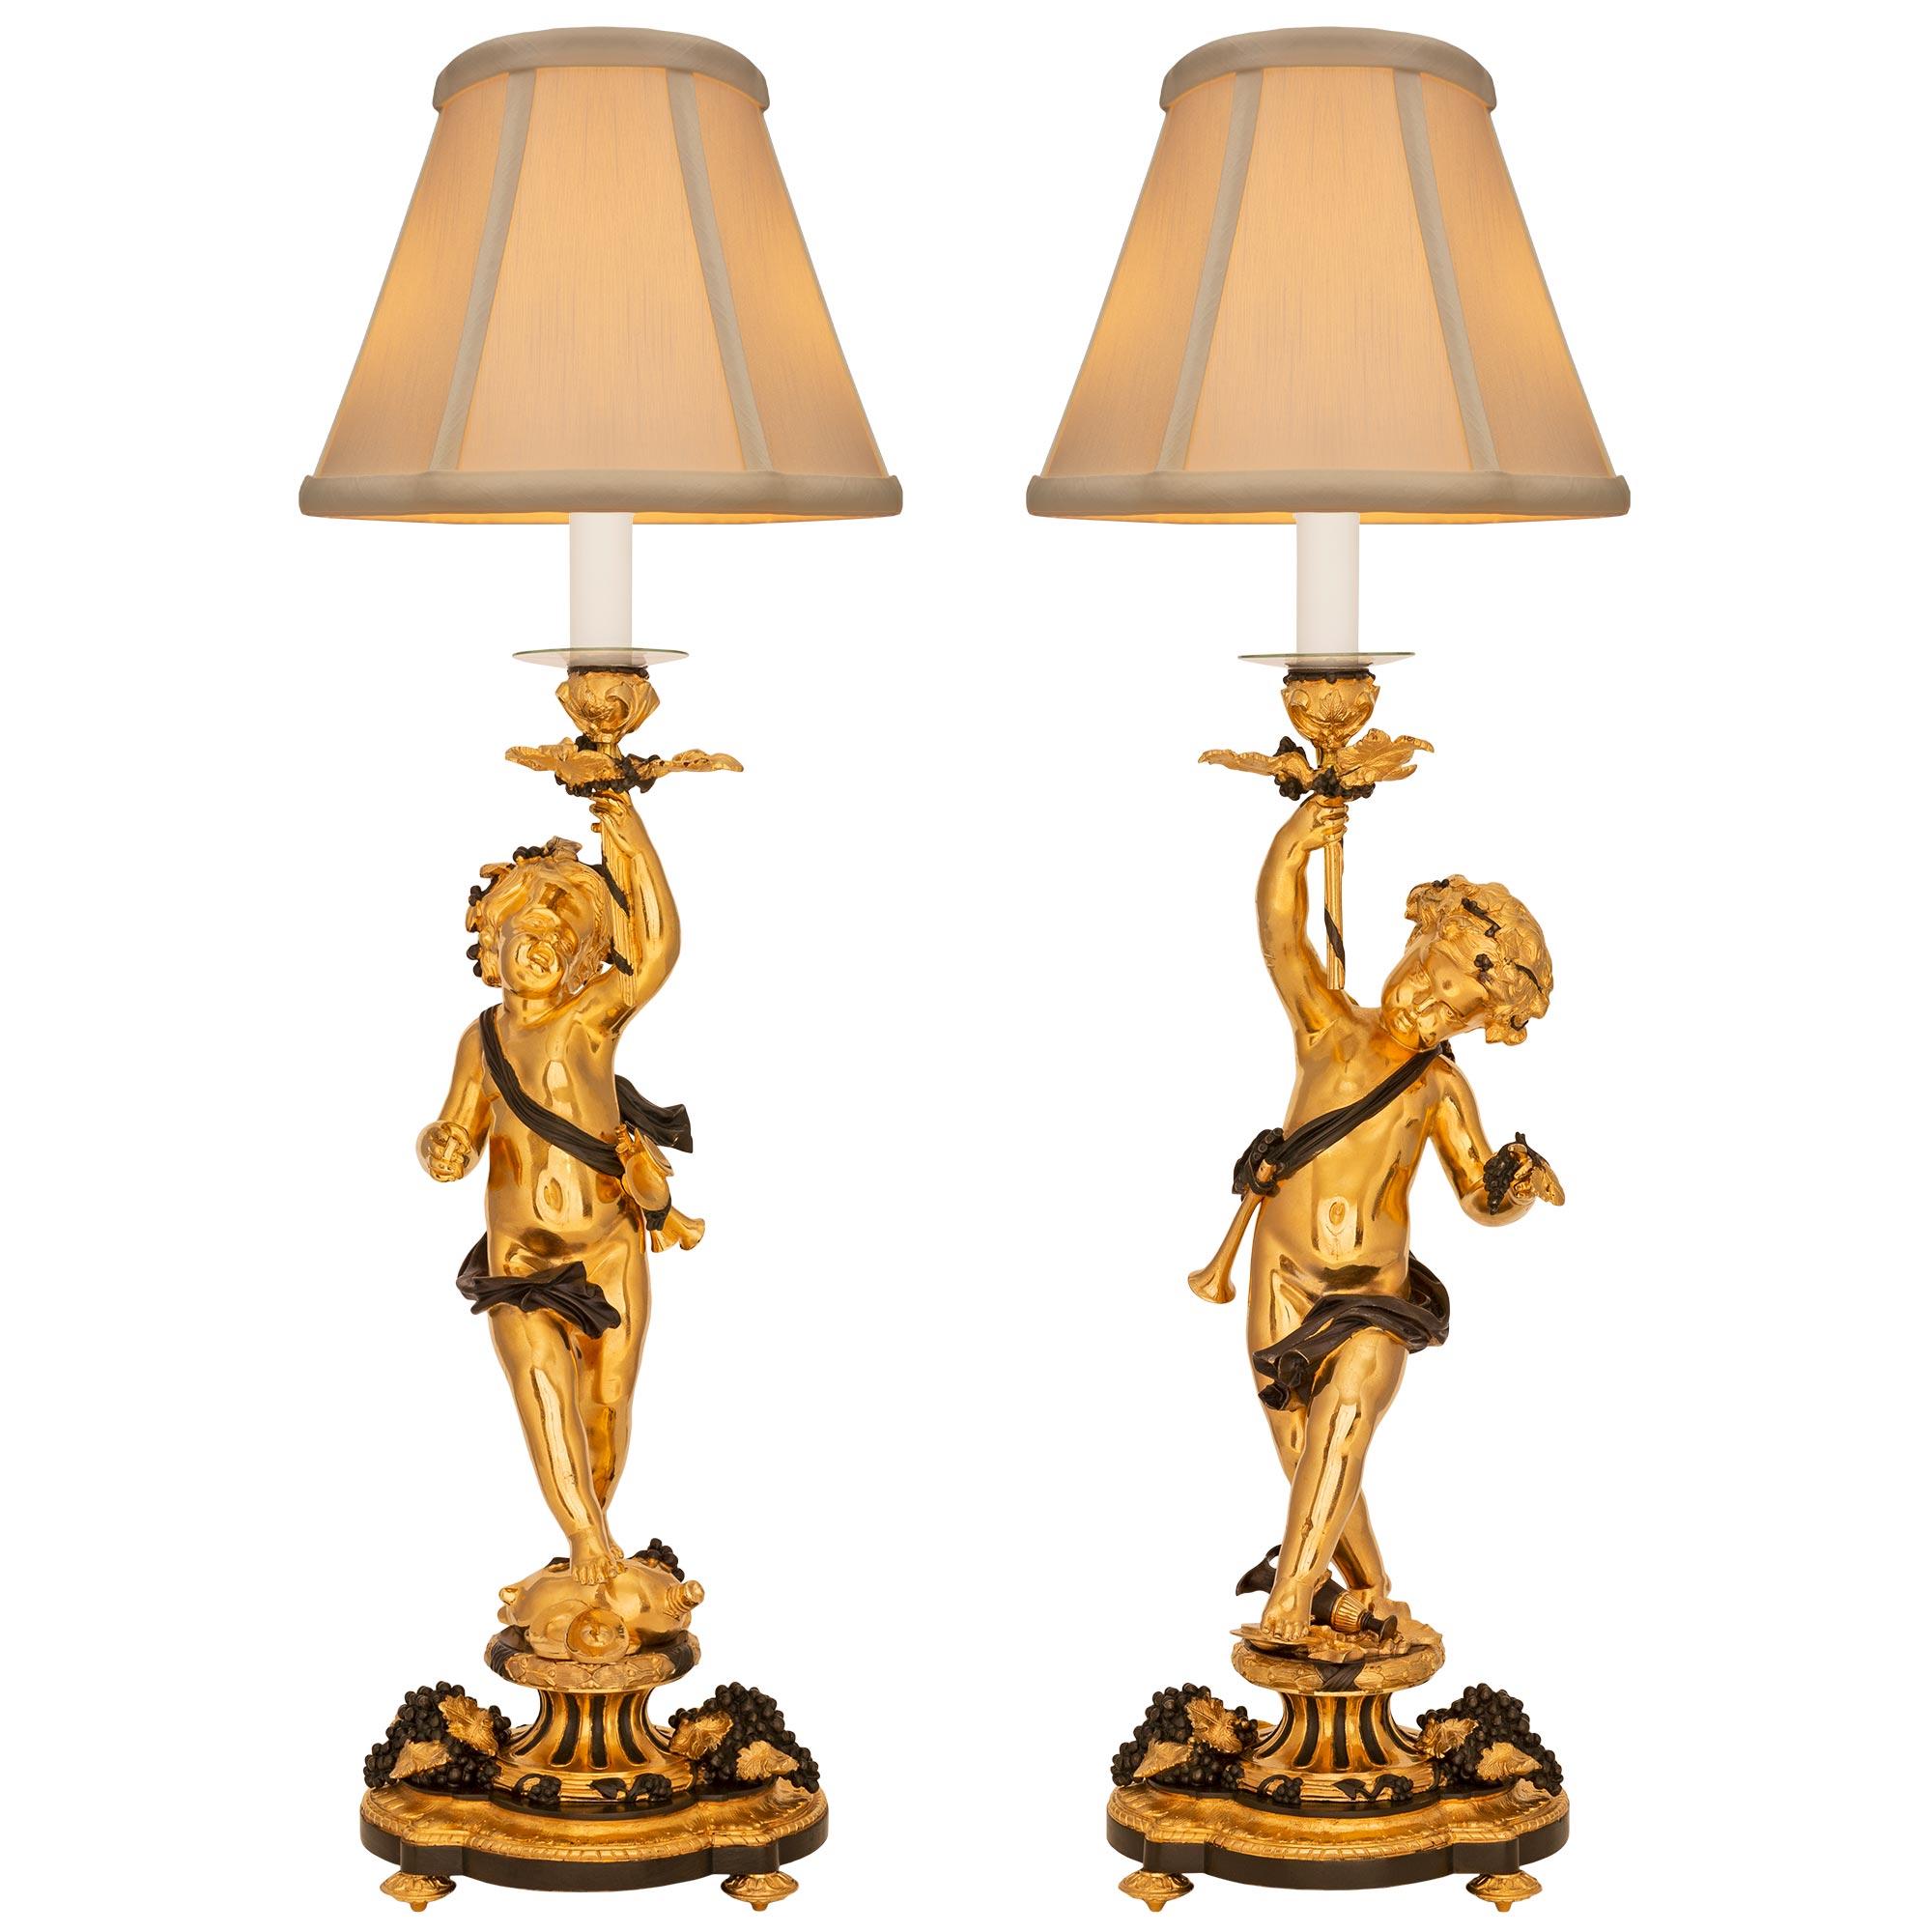 Une remarquable et très décorative paire de lampes en bronze doré et patiné d'époque Louis XVI et Belle Époque. Chaque lampe est surélevée par une élégante base de forme festonnée avec de fins pieds feuillus en forme de topie, de jolies grappes de